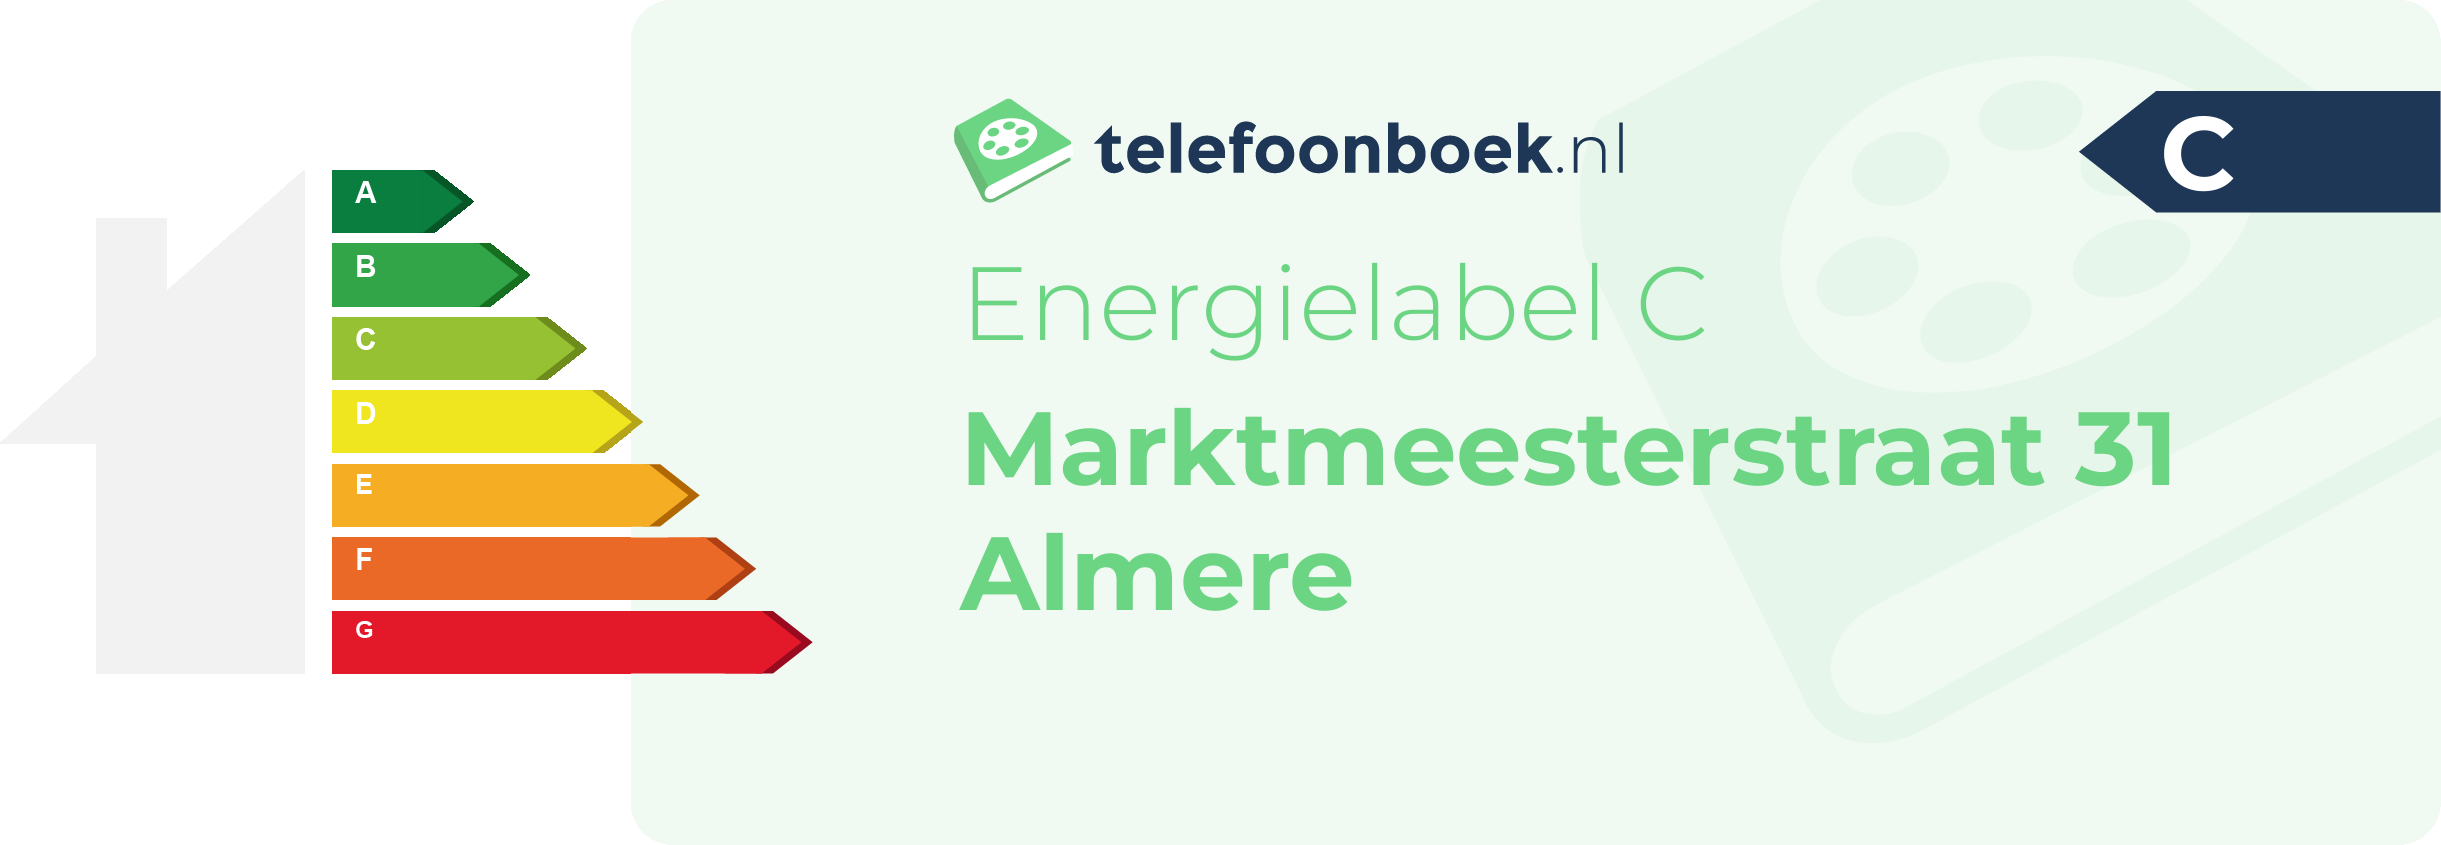 Energielabel Marktmeesterstraat 31 Almere